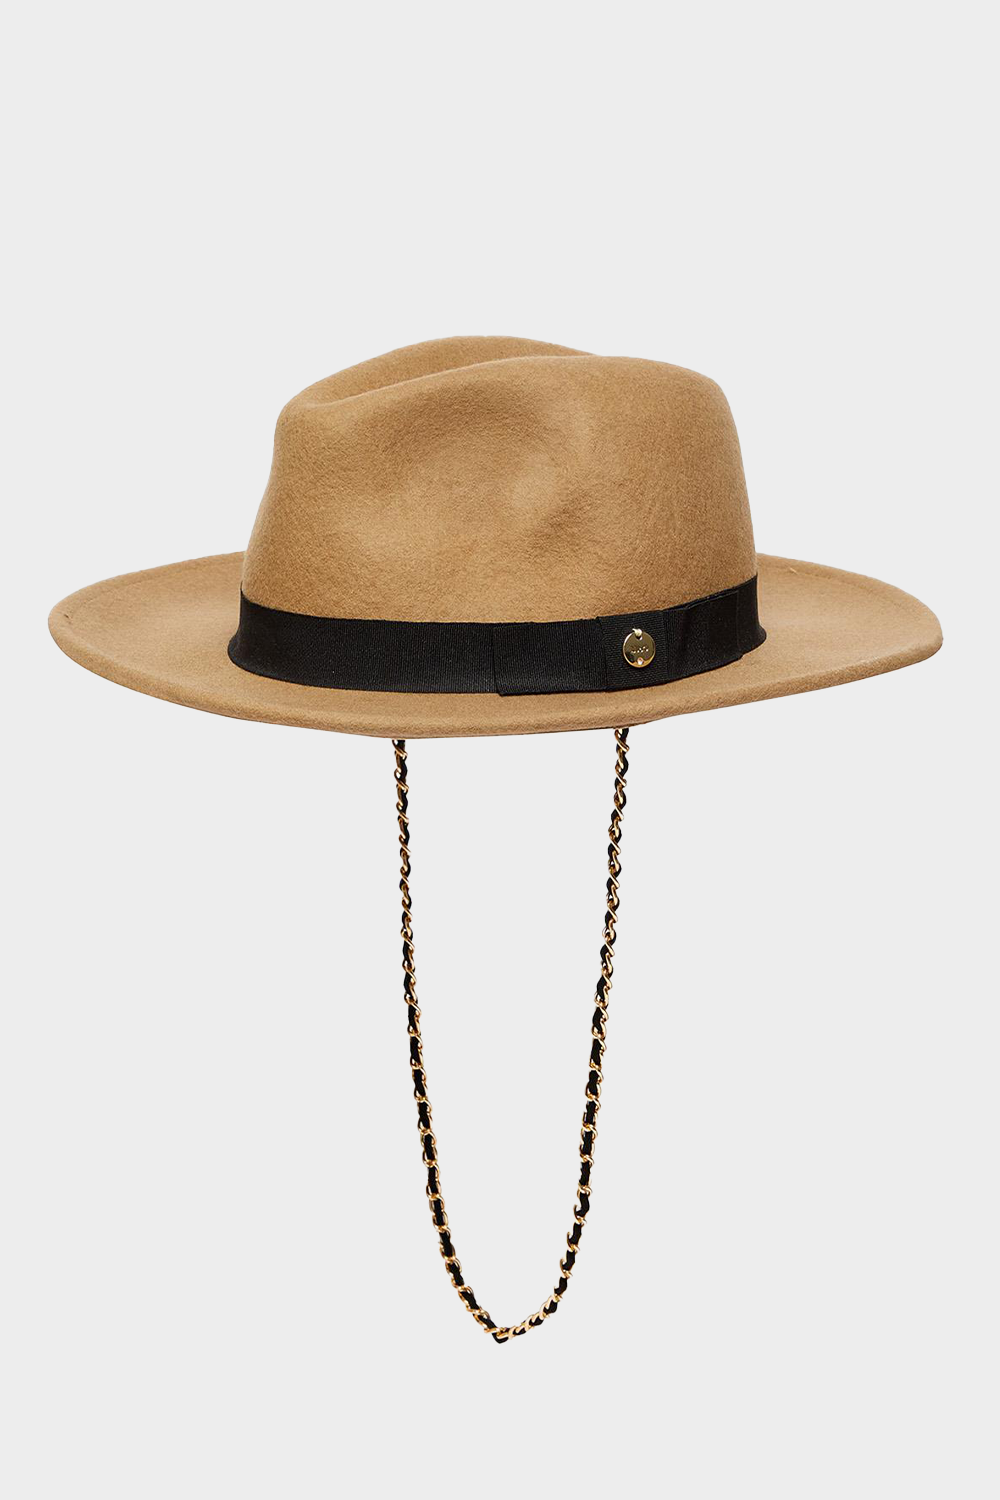 כובע פדורה לנשים בצבע חום LIU JO Vendome online | ונדום .